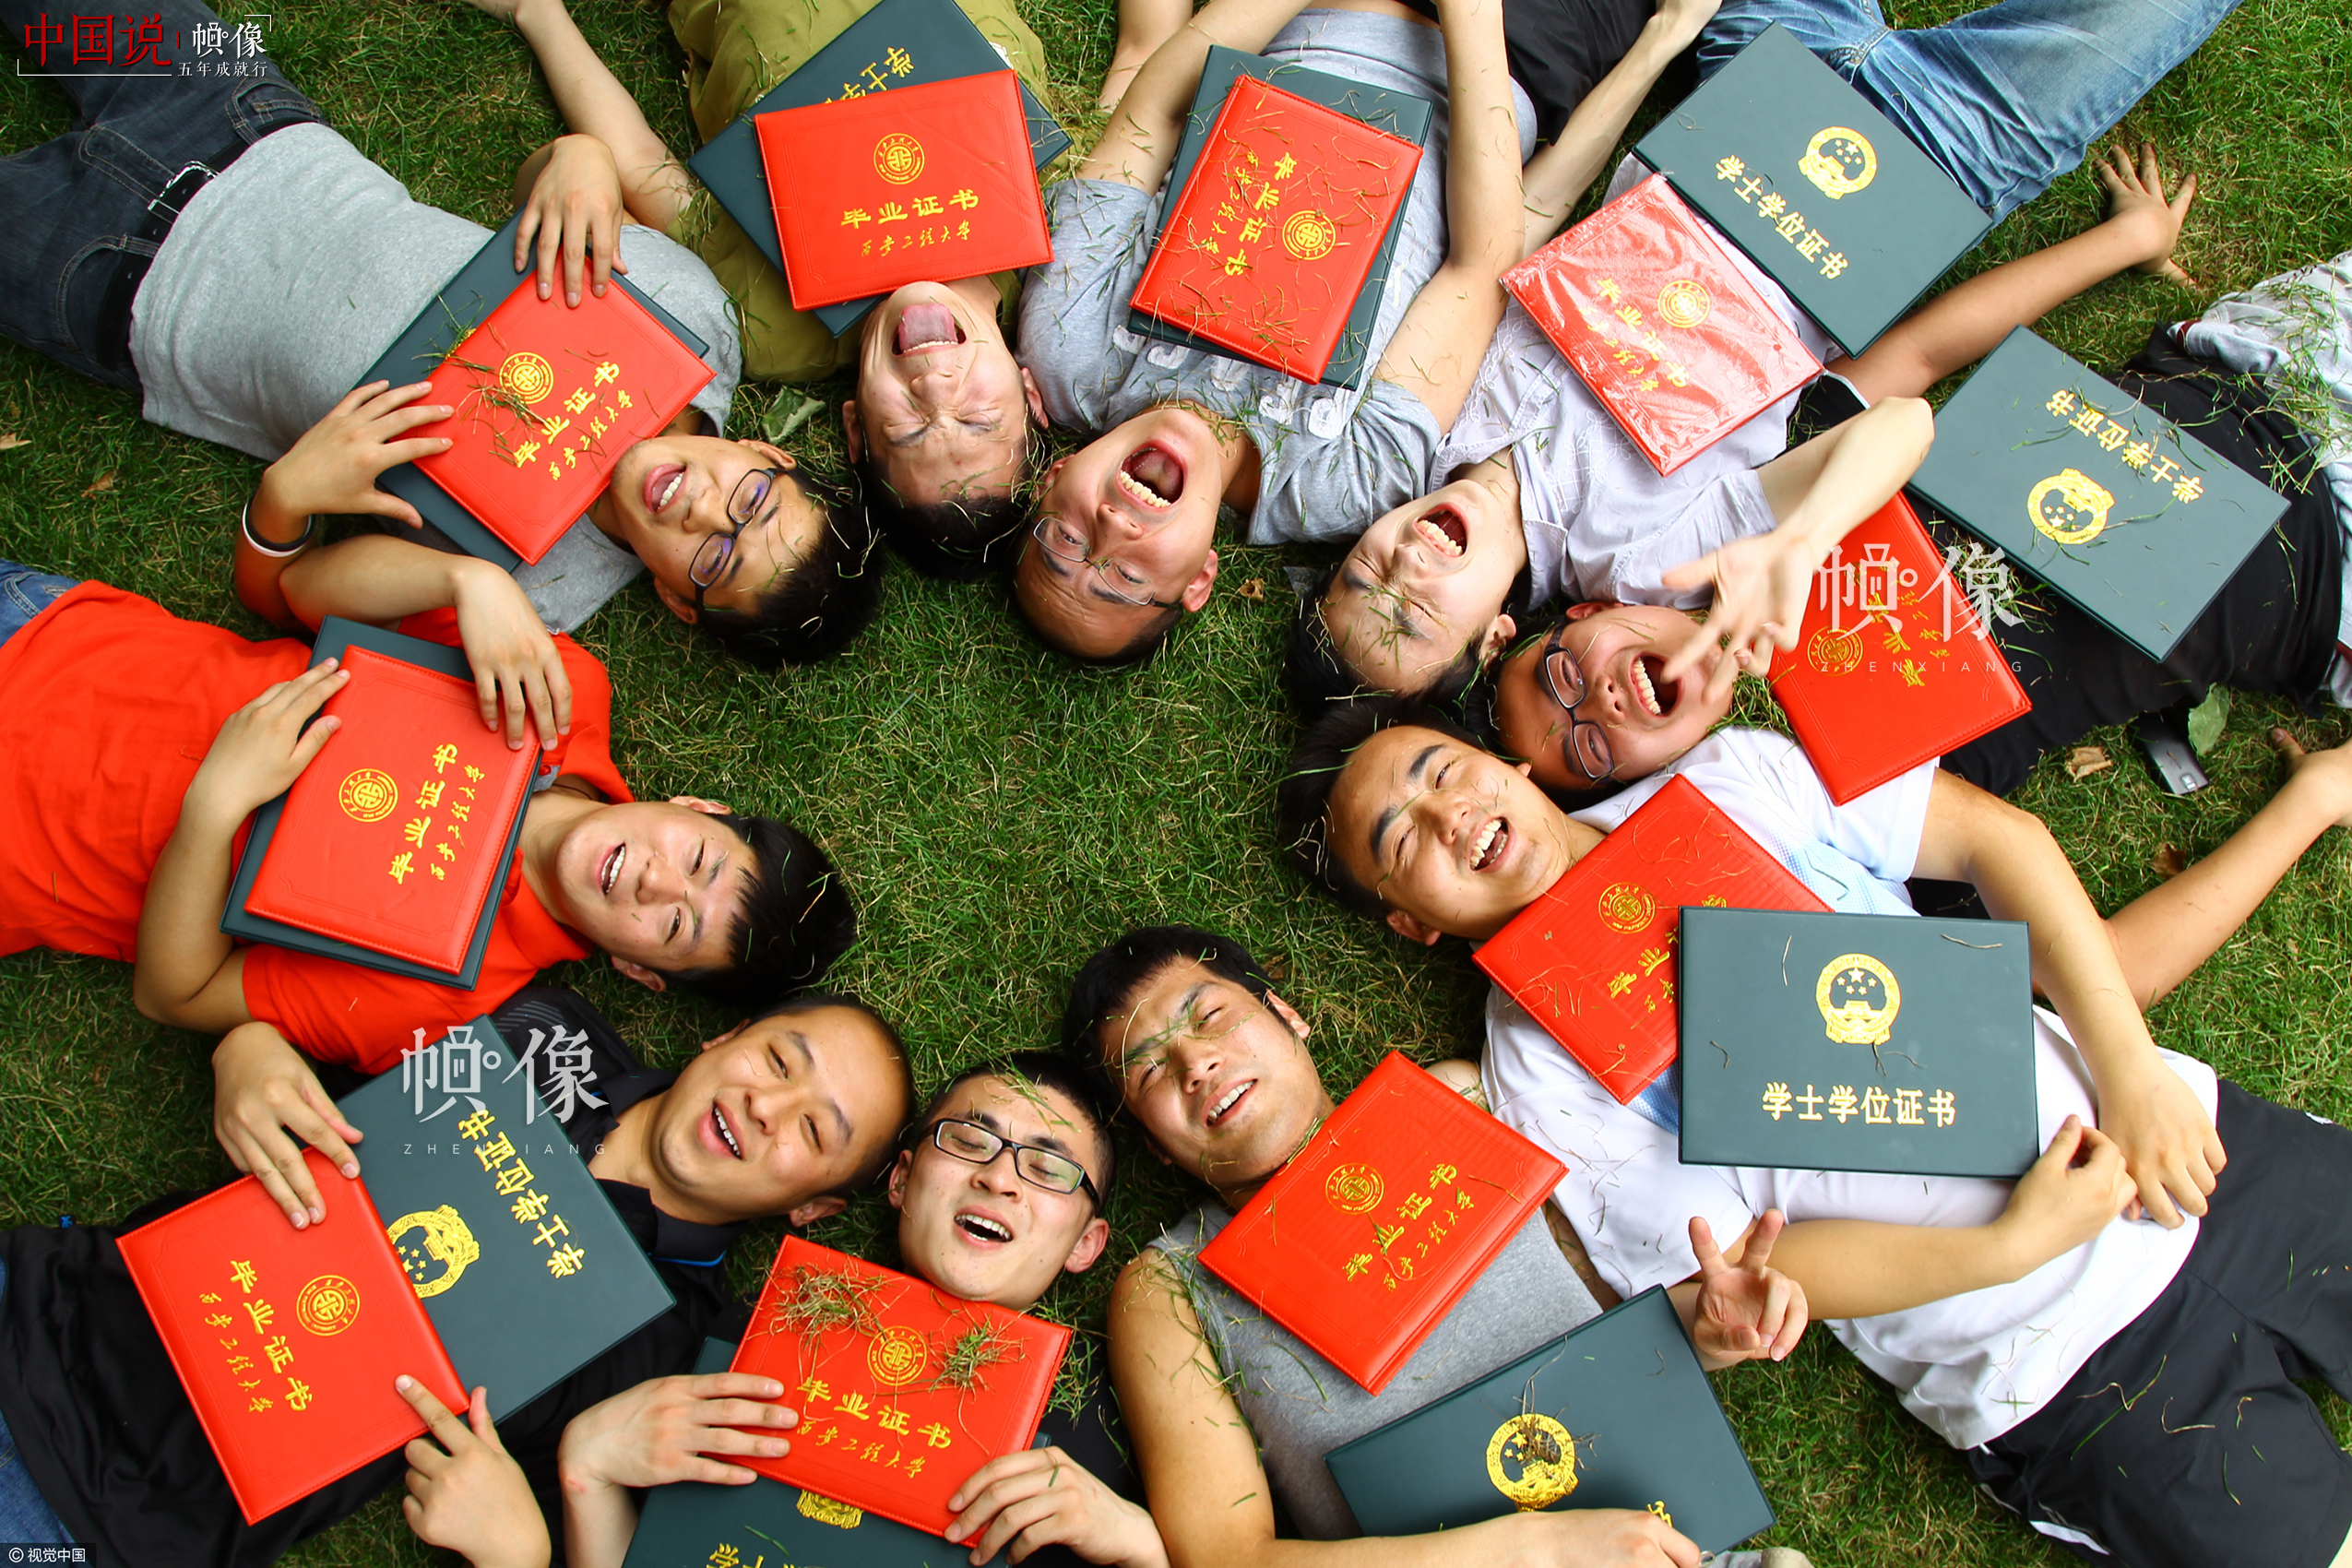 2012年6月28日，西安工程大學校園內，2008屆藝術設計班的幾位同學拿著畢業證和學位證躺在草地上。呂松楊是其中一位，他説現在的大學生多得猶如地上的青草，但我們願從草根做起，拾級而上為夢想拼搏。視覺中國供圖